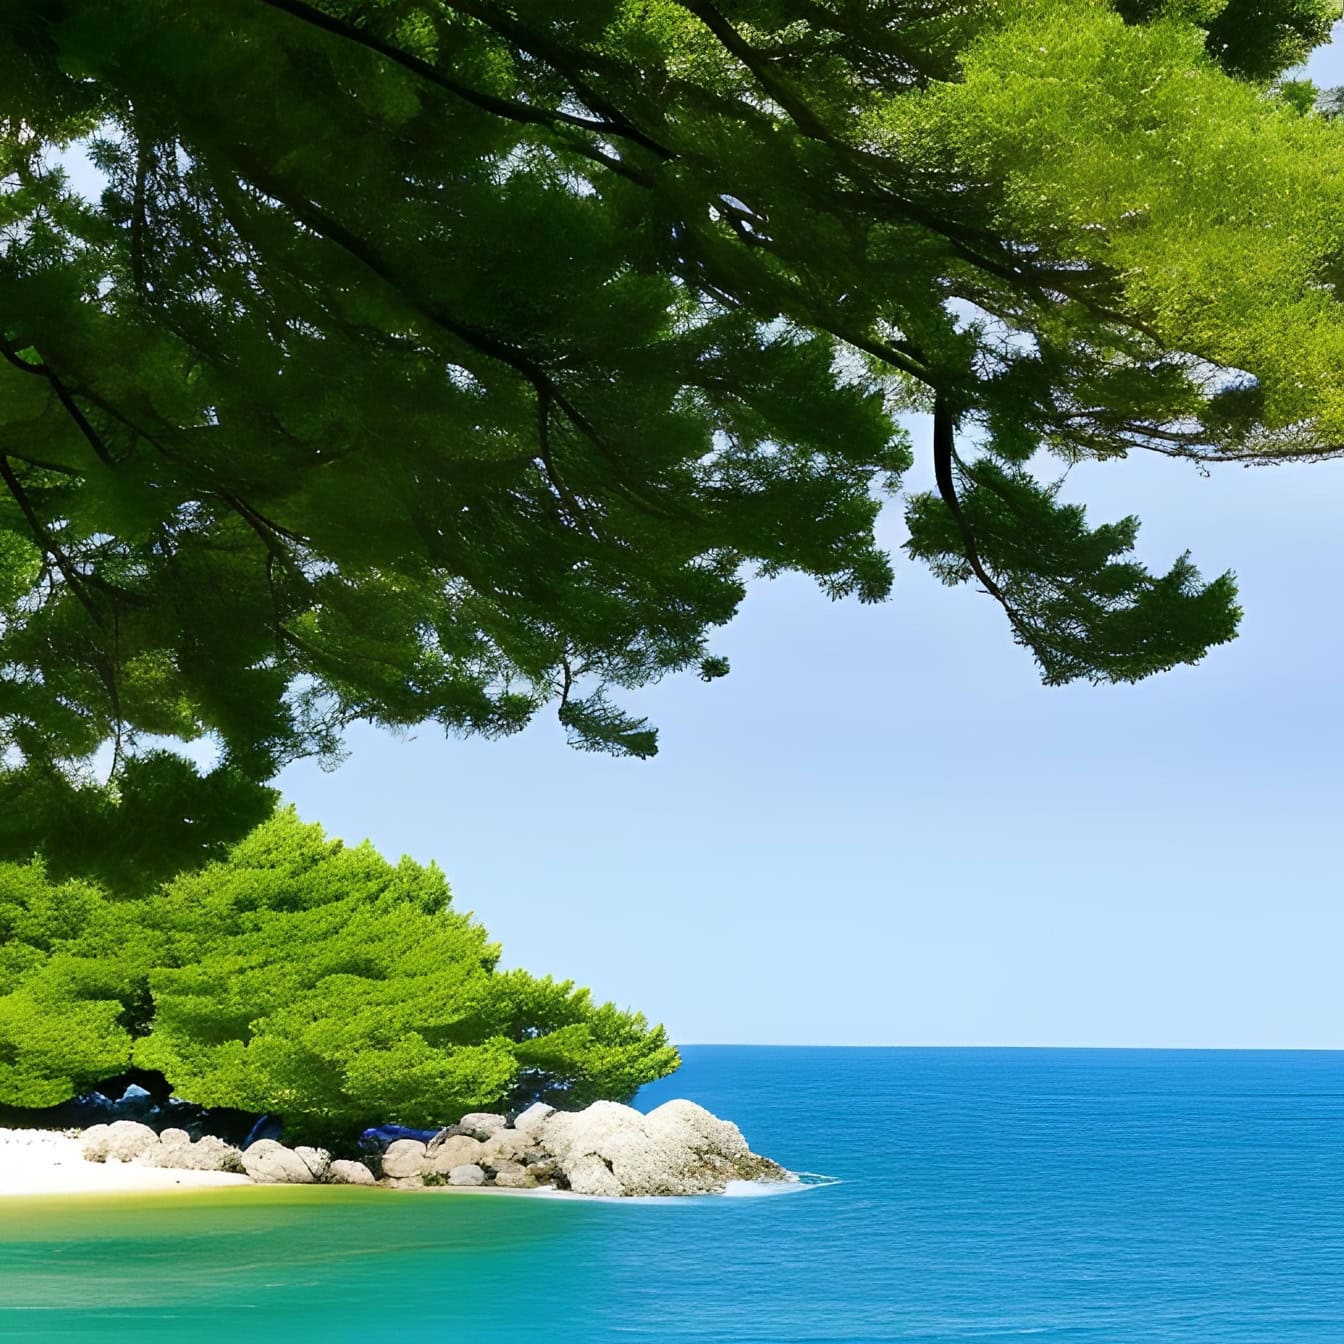 Ілюстрація верхівки дерева над морським узбережжям